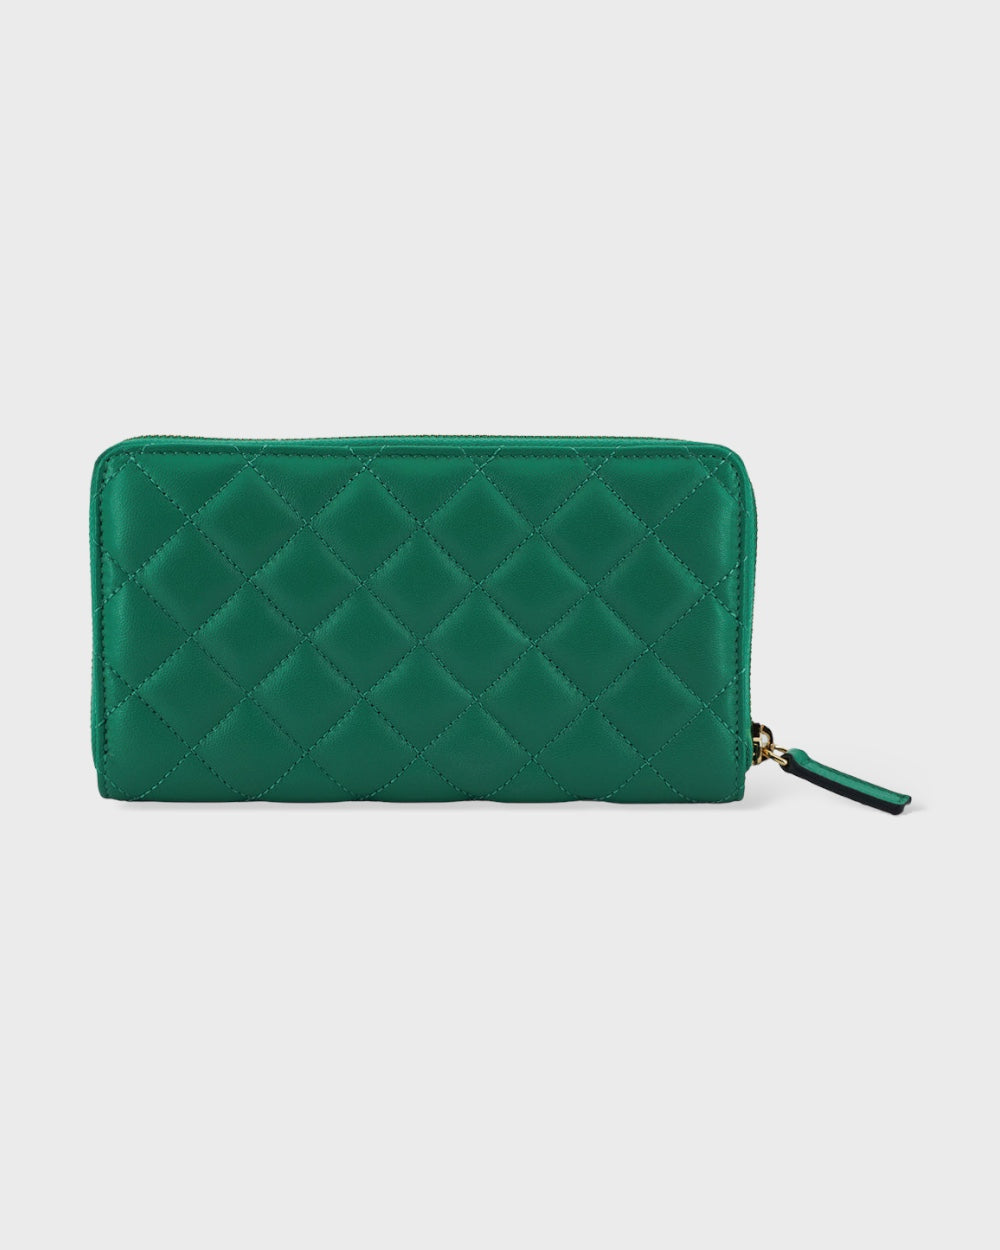 Versace Green Leather Long Zip Around Wallet